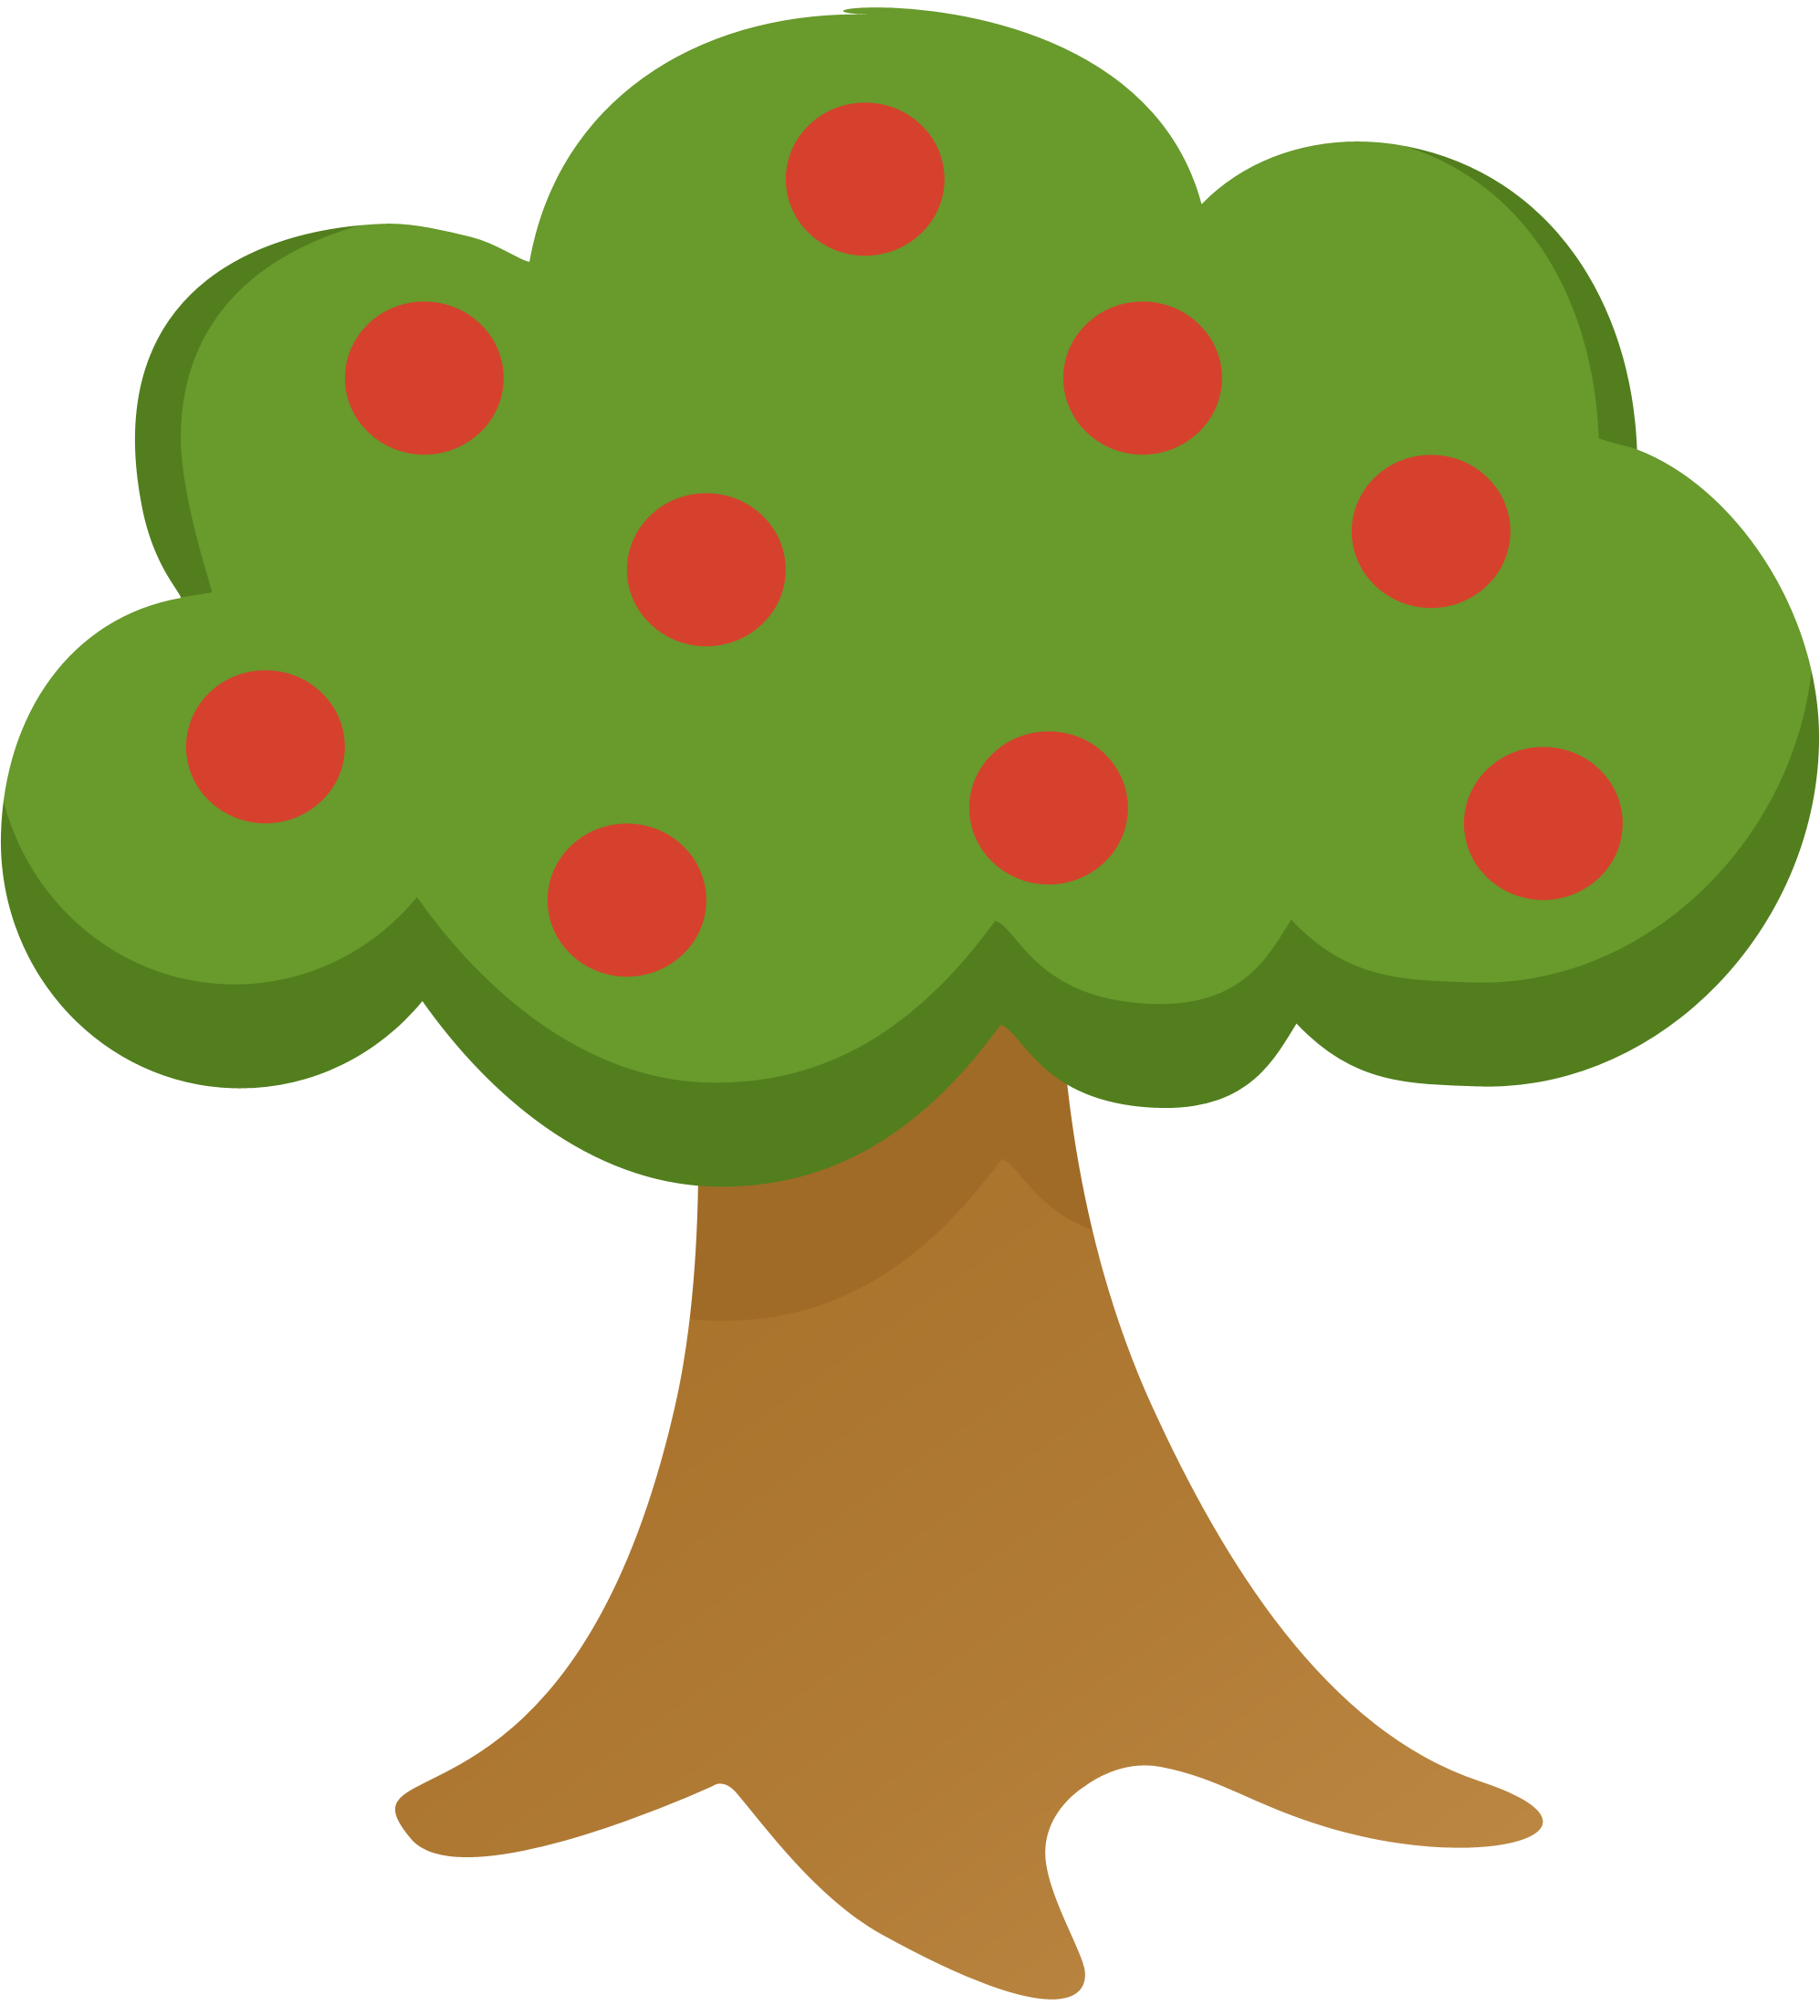 Food tree